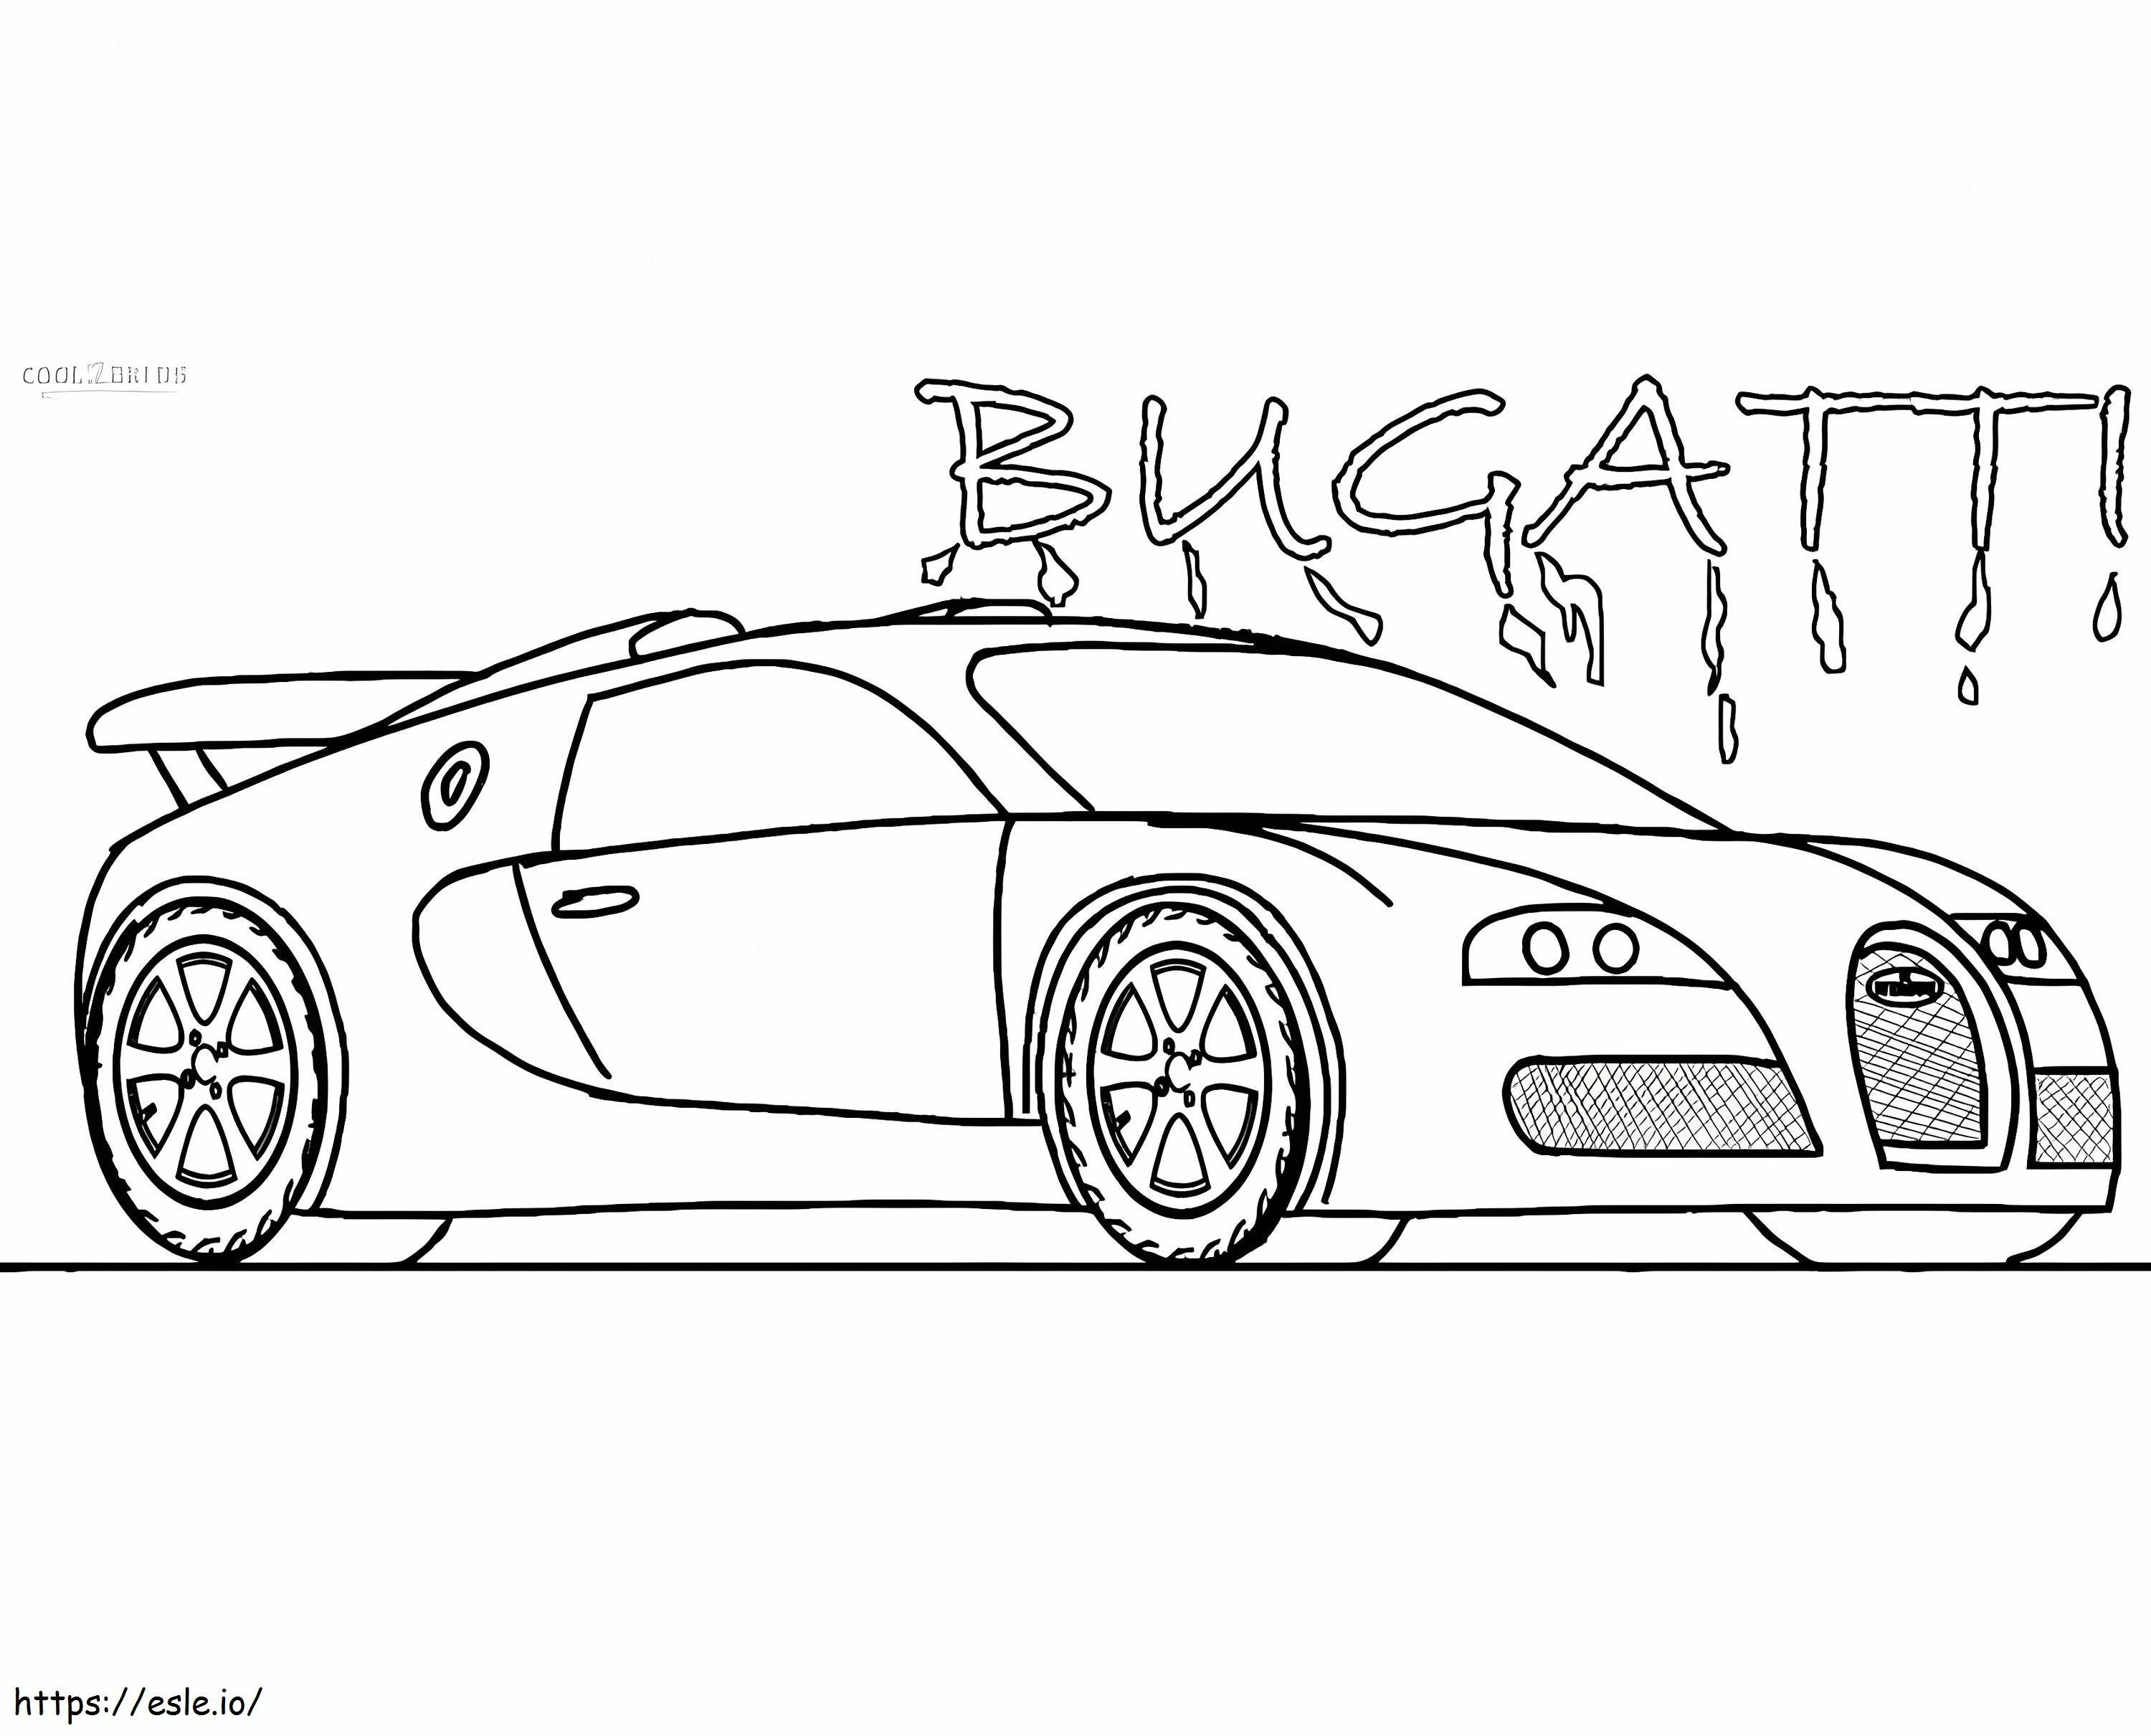 Bugatti 4 Car coloring page